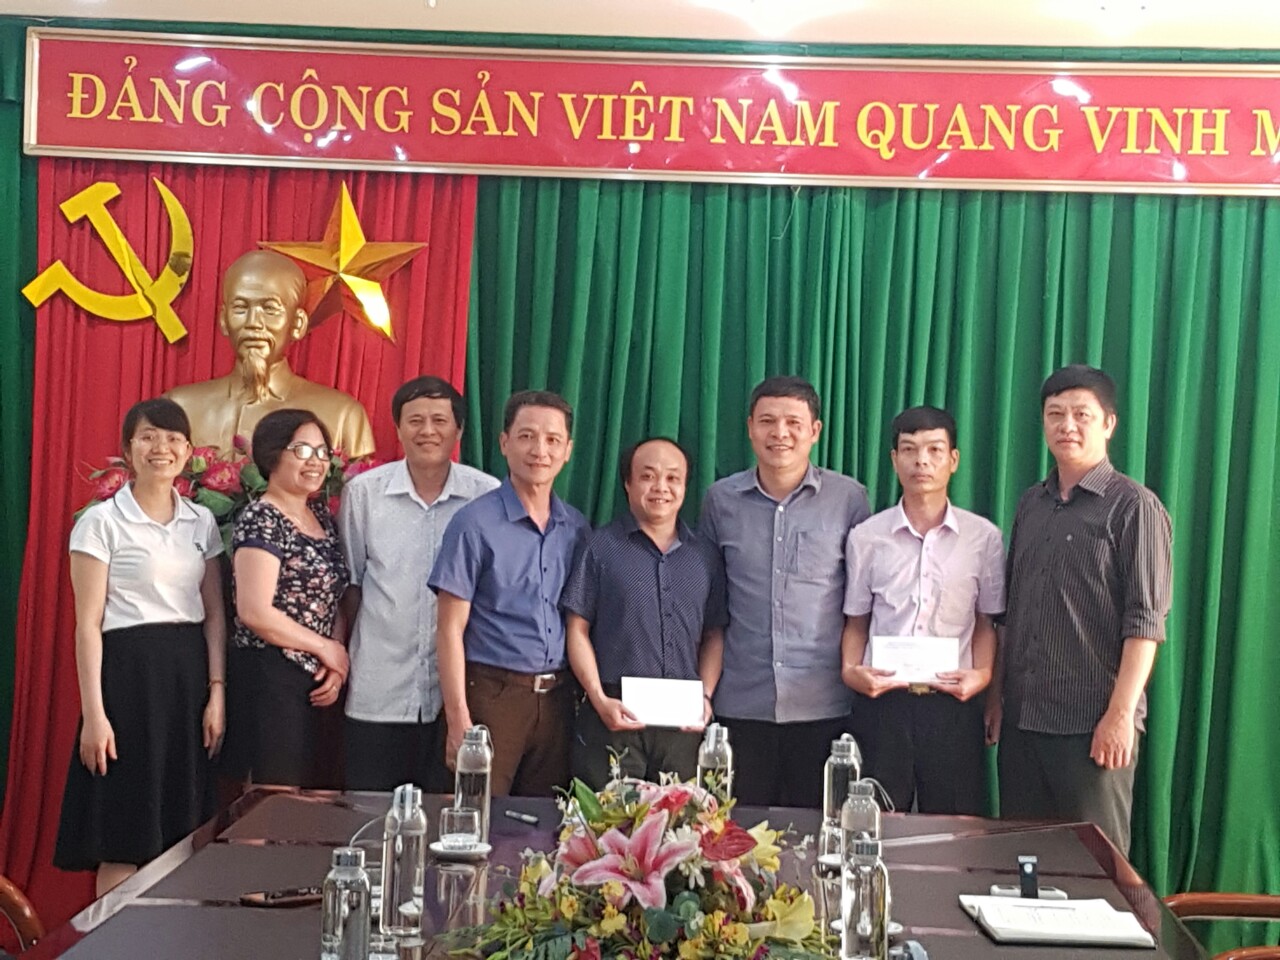 Lãnh đạo Cục gặp mặt công chức tham gia biệt phái tại Cục Thi hành án dân sự Thành phố Hồ Chí Minh.